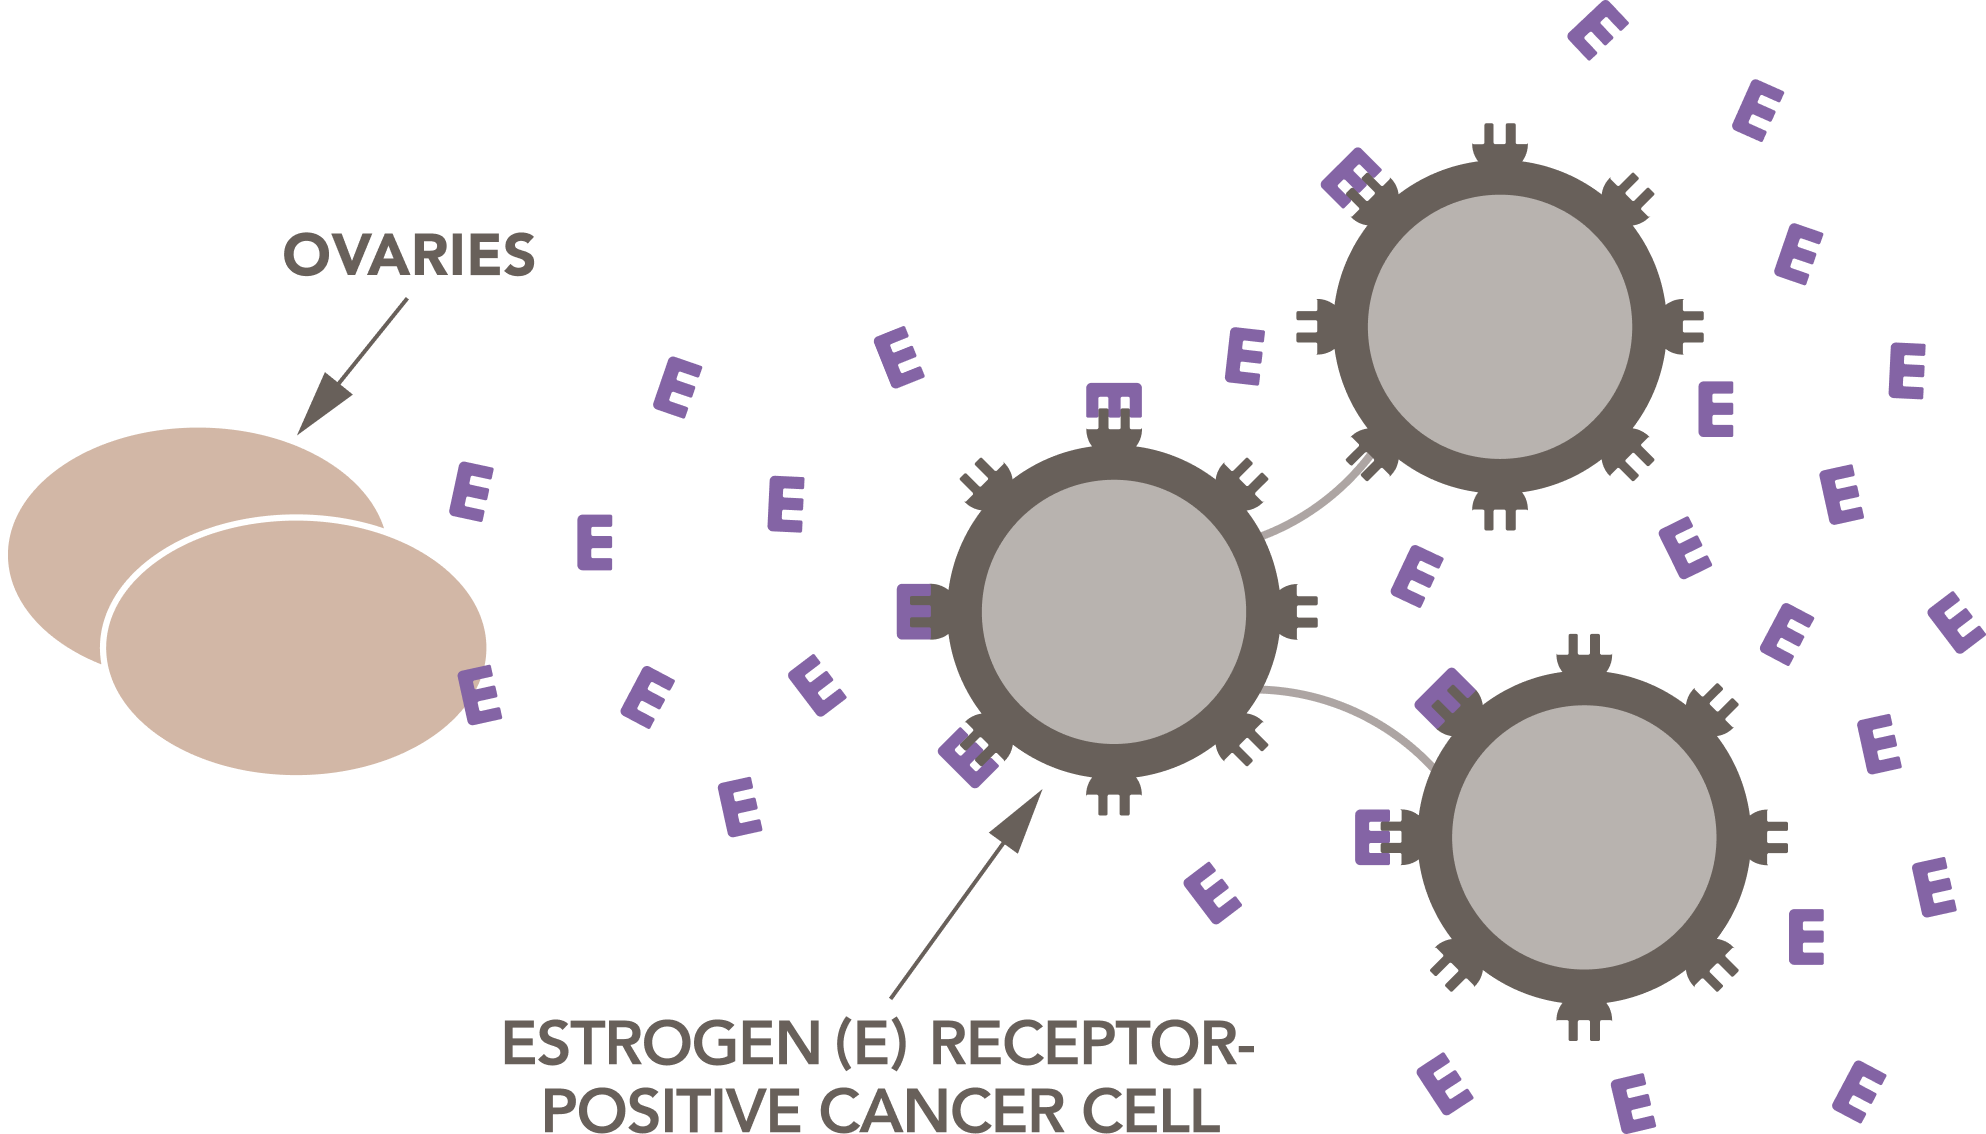 Illustration of how ovaries release estrogen that fuels estrogen receptor-positive cancer cells